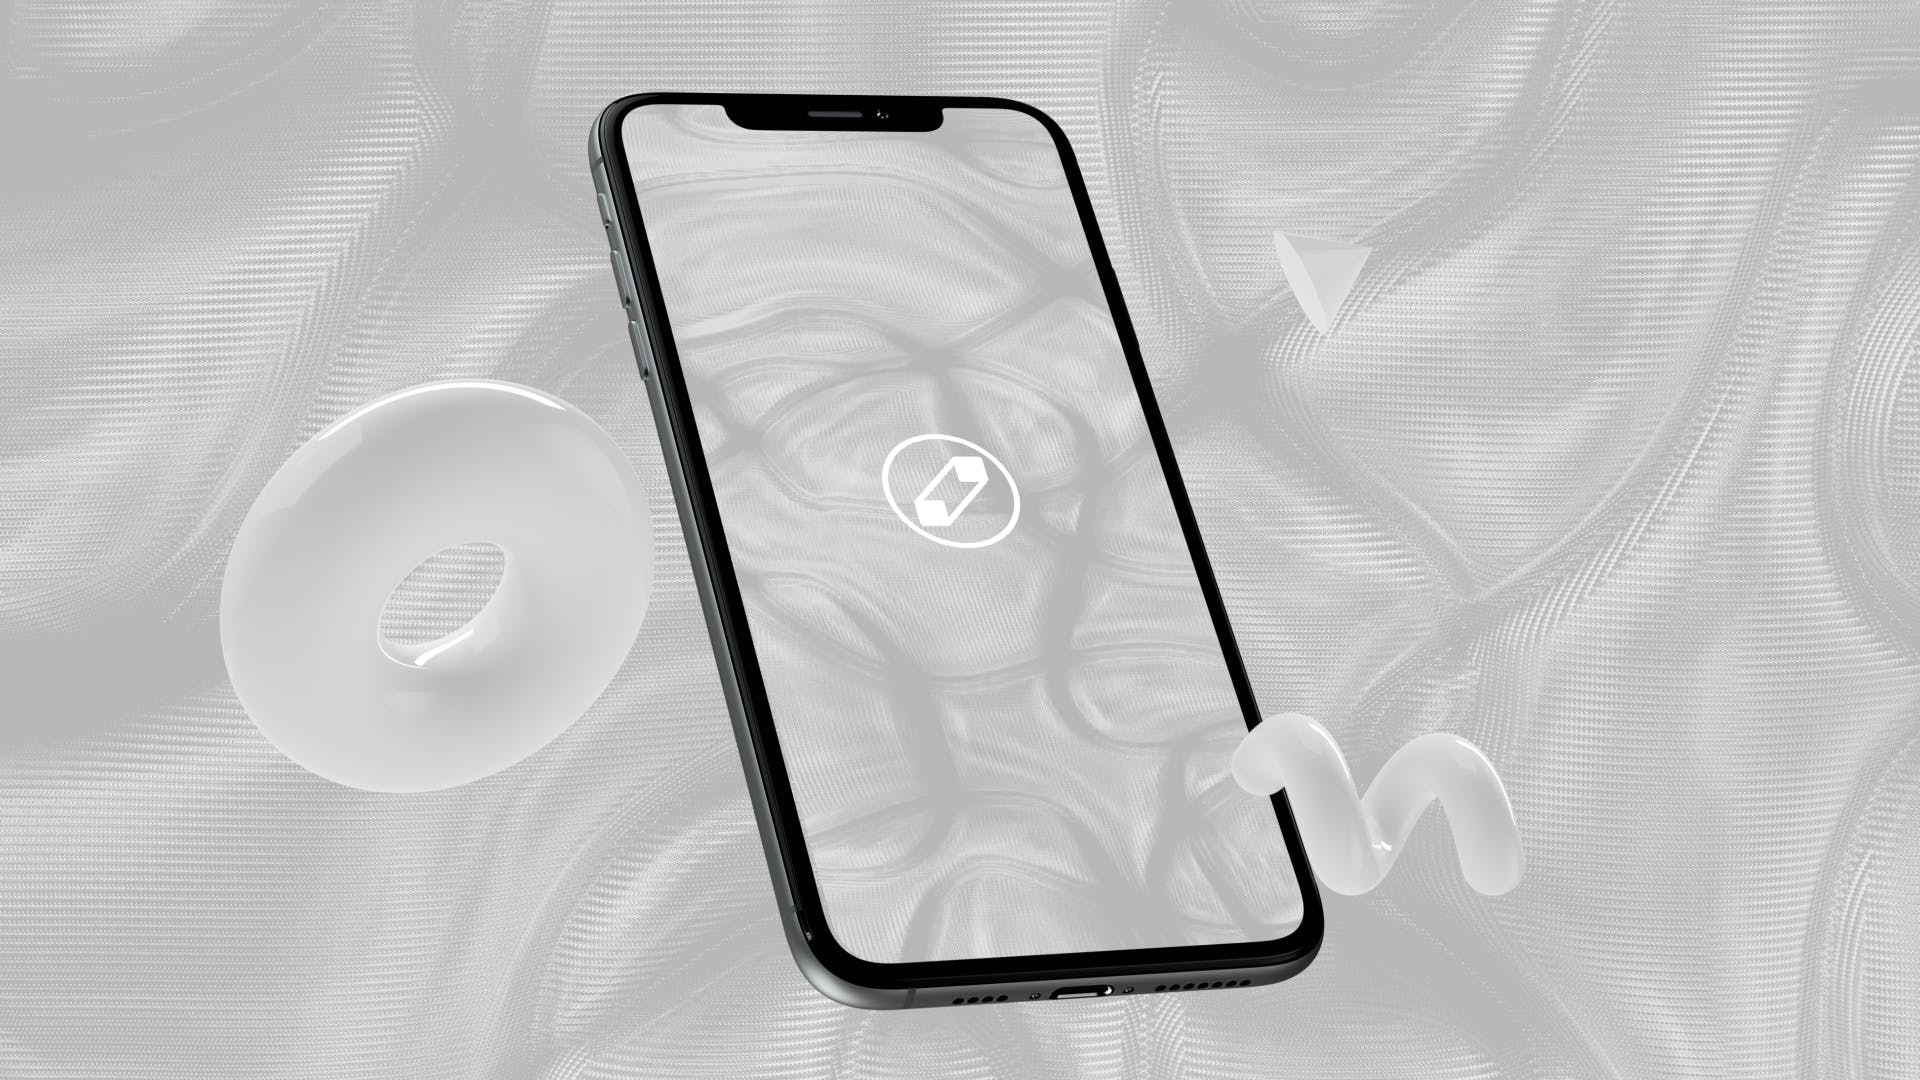 优雅时尚风格3D立体风格iPhone手机屏幕预览蚂蚁素材精选样机 10 Light Phone Mockups插图(5)